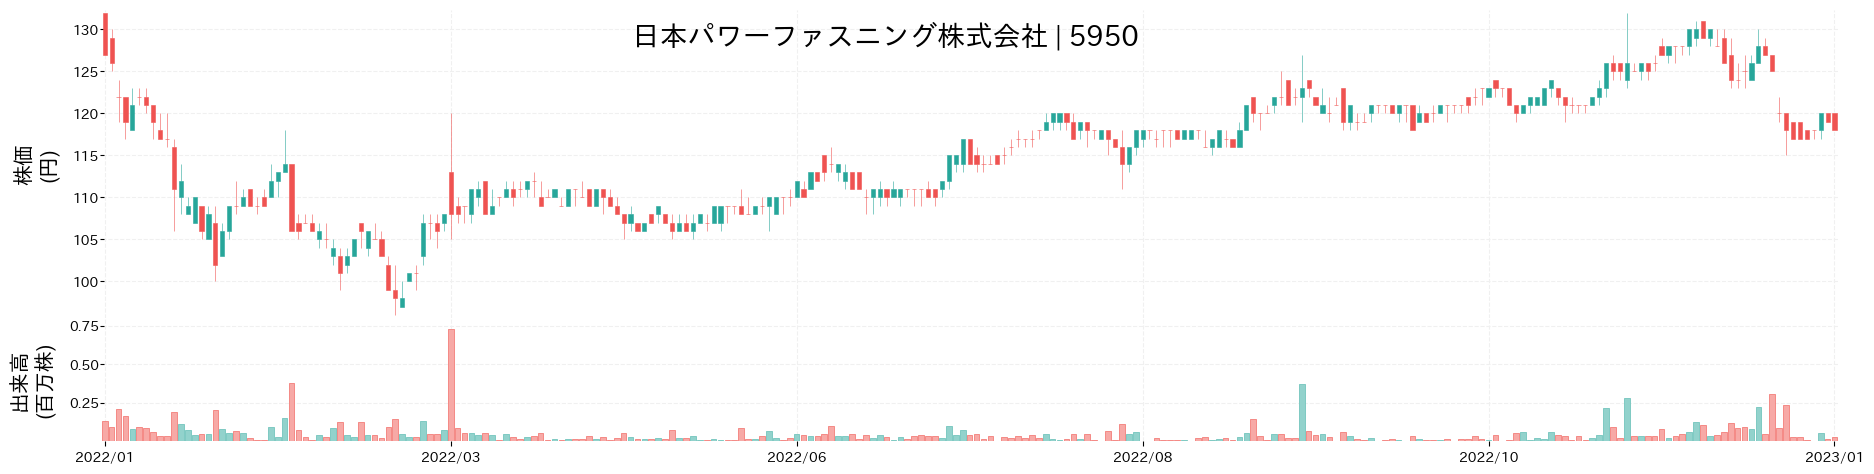 日本パワーファスニングの株価推移(2022)